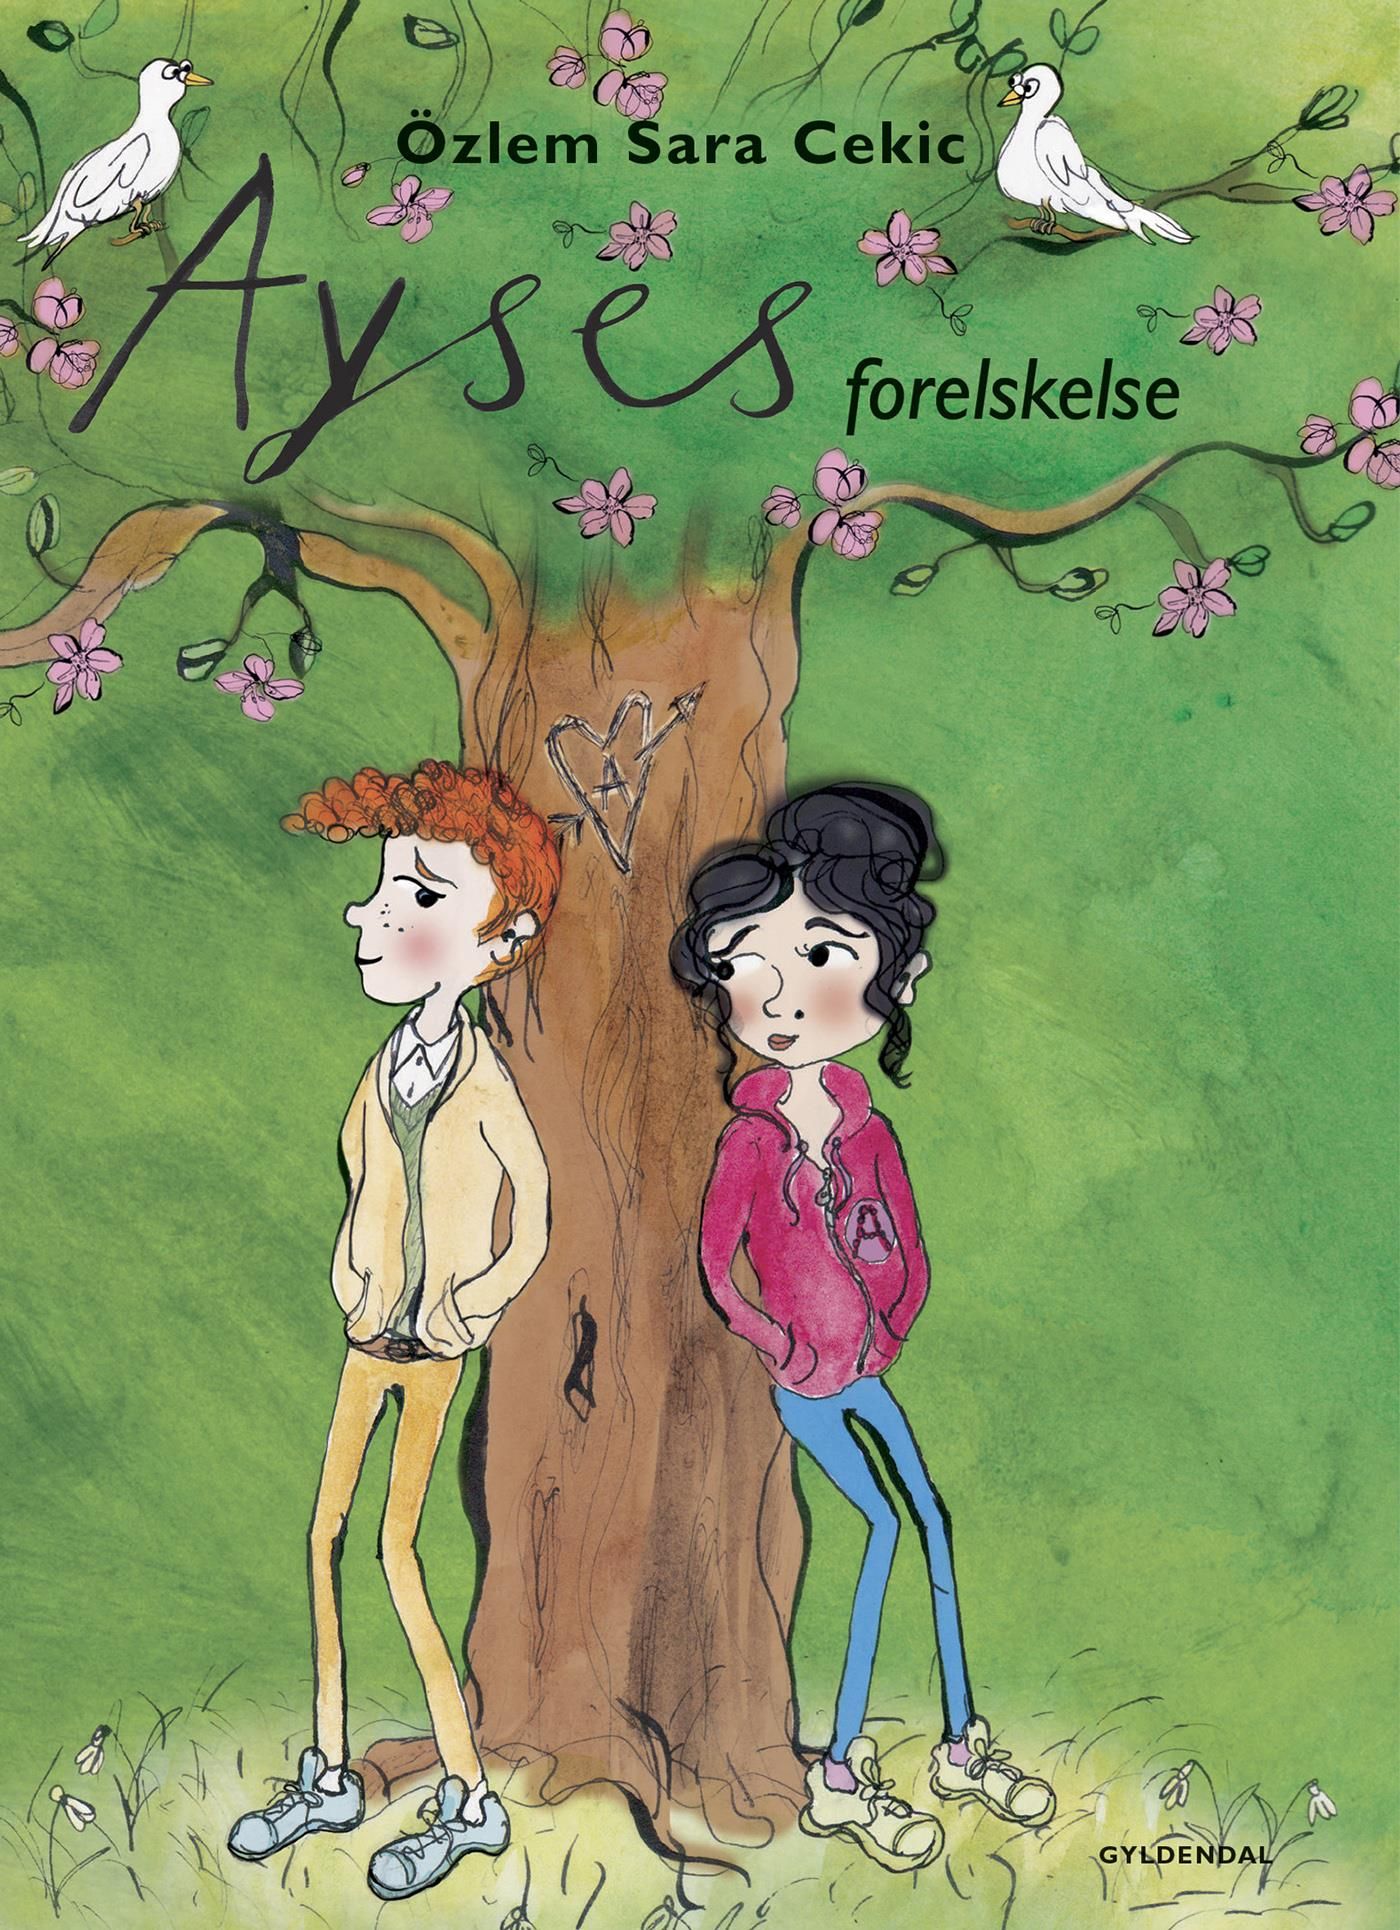 Ayses forelskelse, e-bog af Özlem Cekic